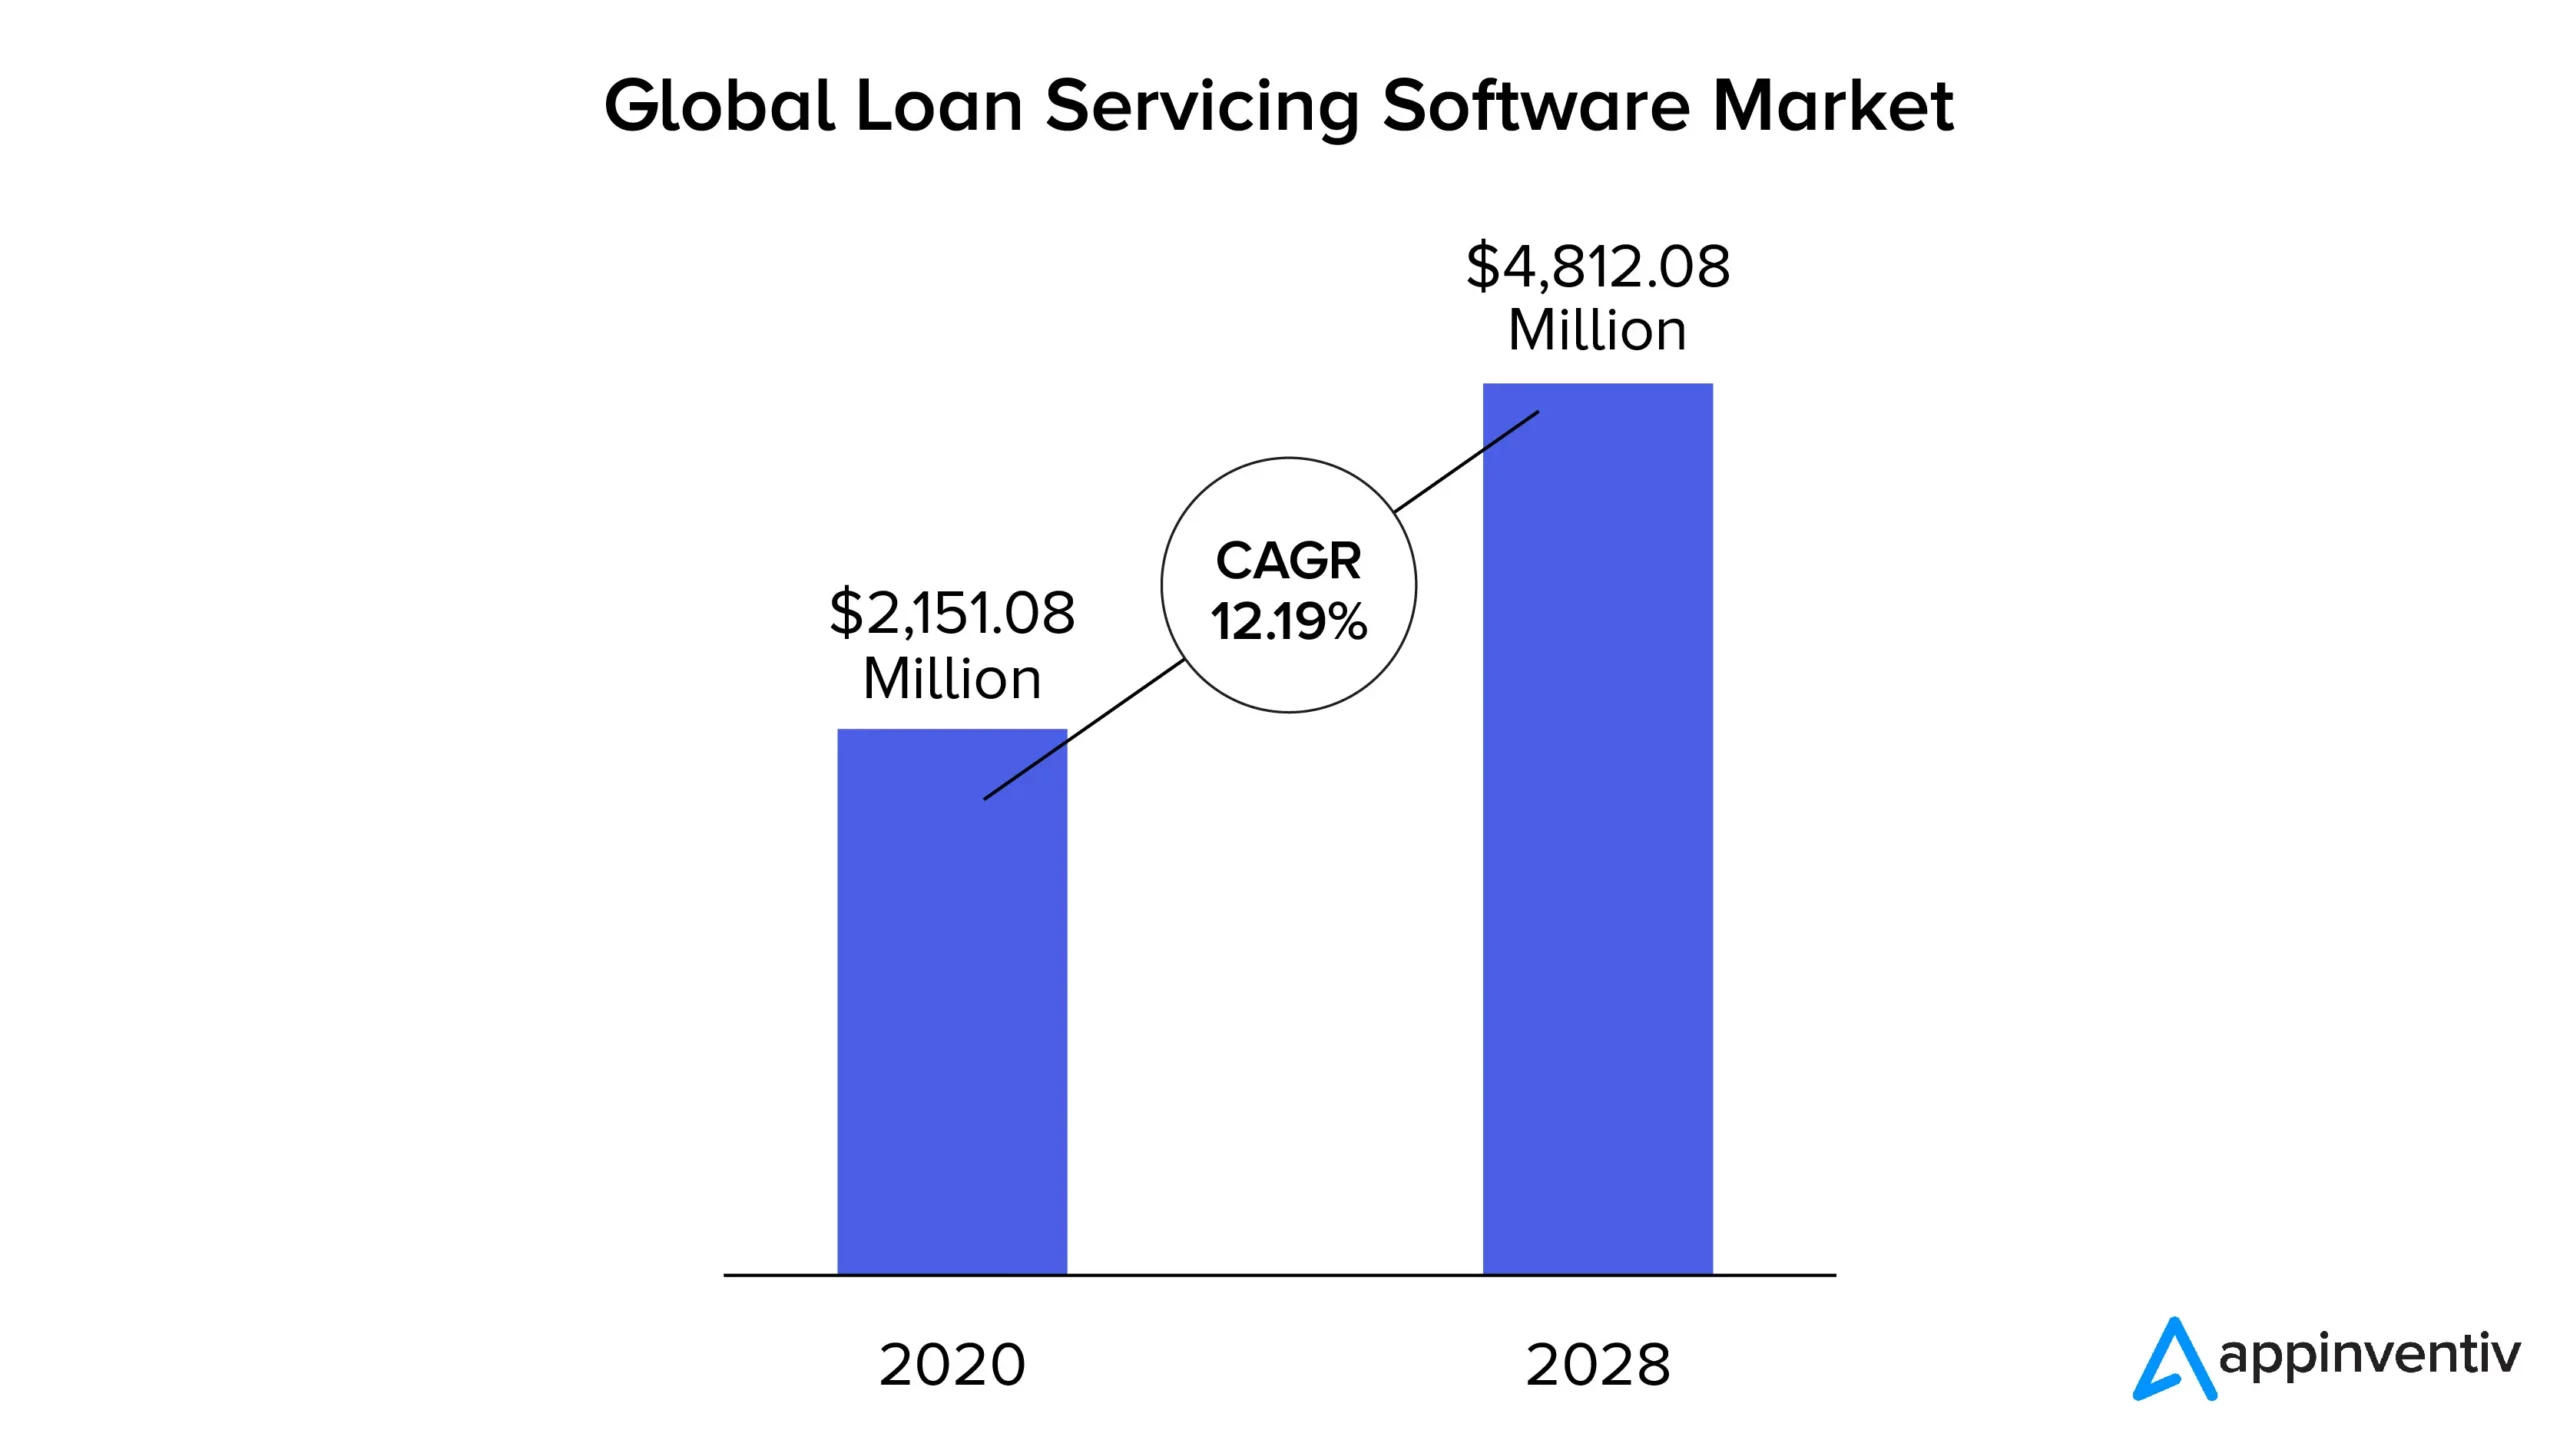 Pasar perangkat lunak layanan pinjaman global